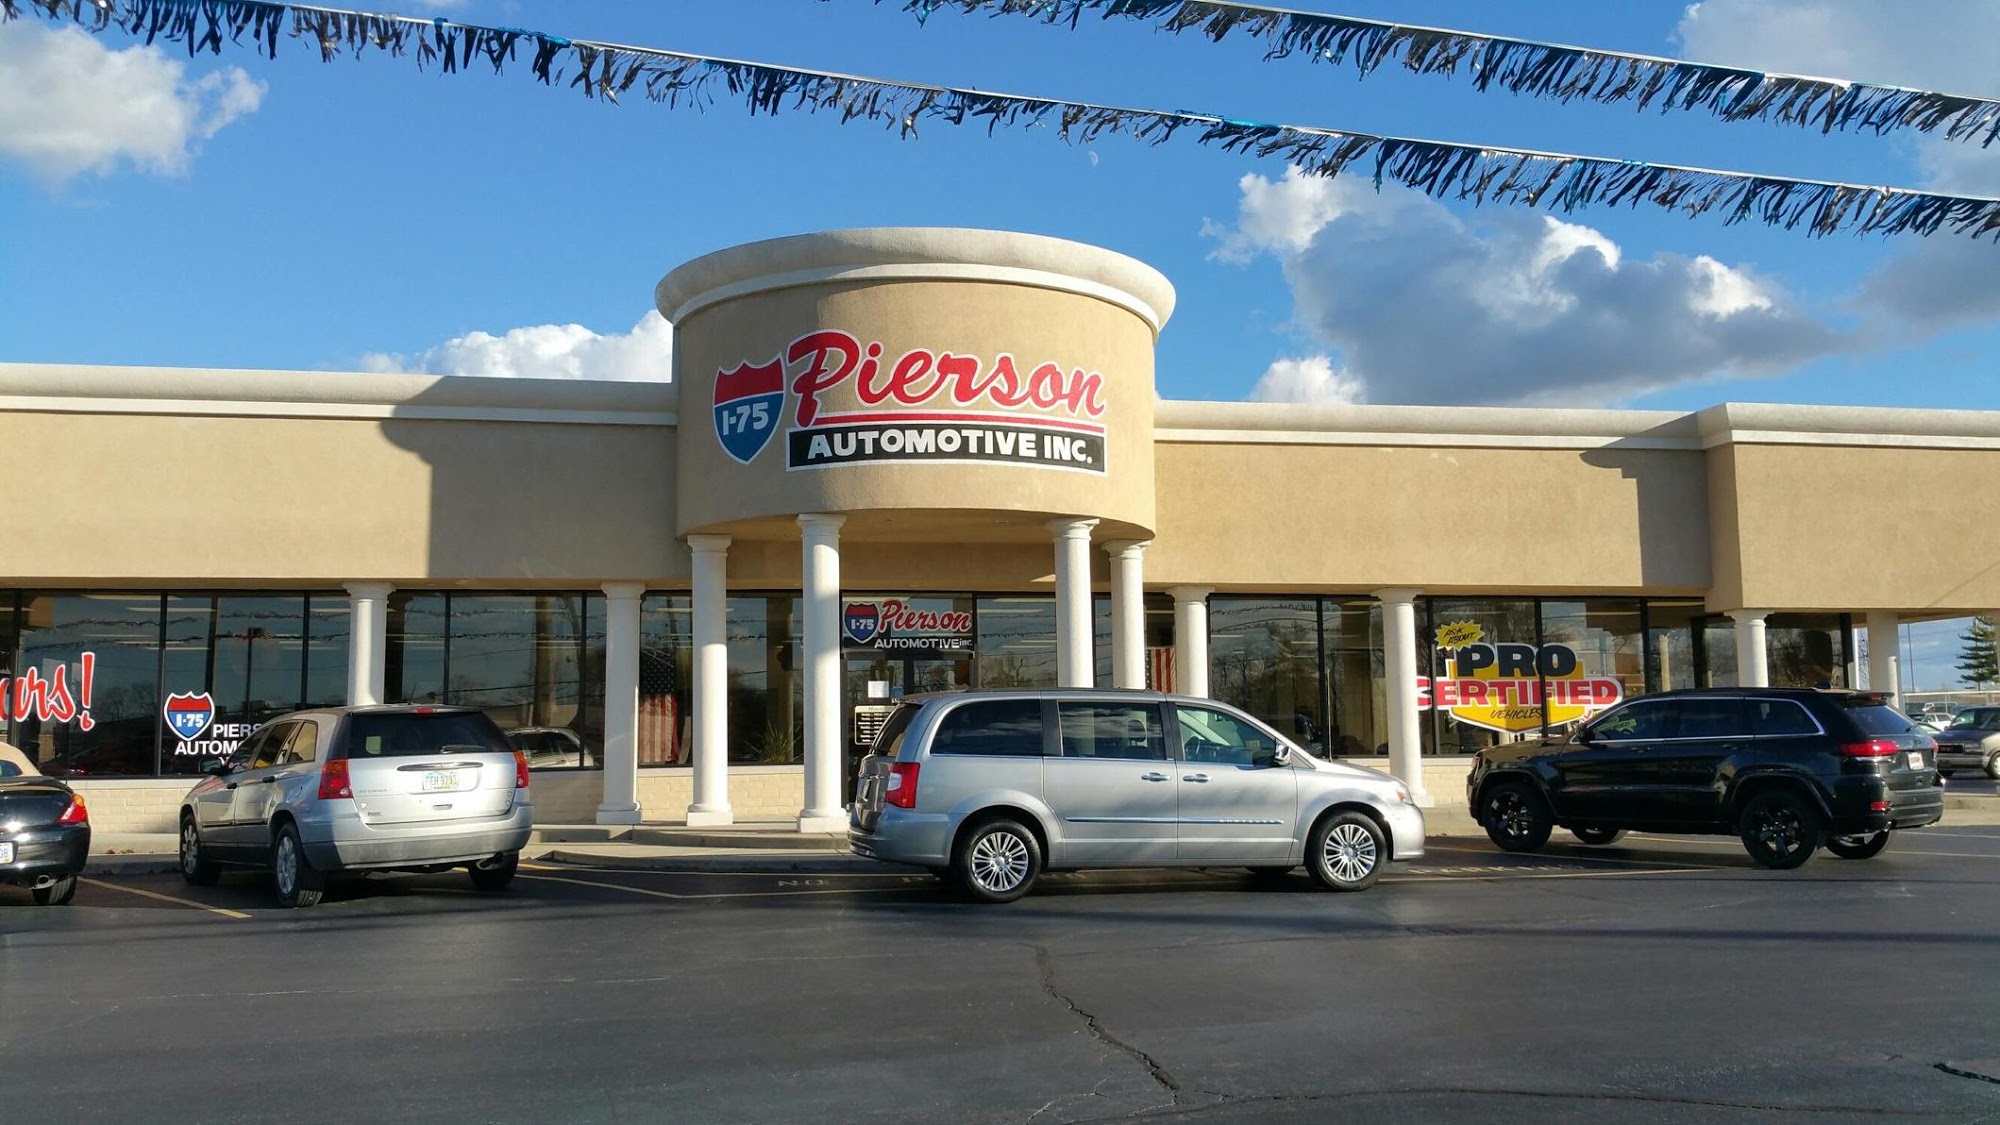 I-75 Pierson Automotive Inc.